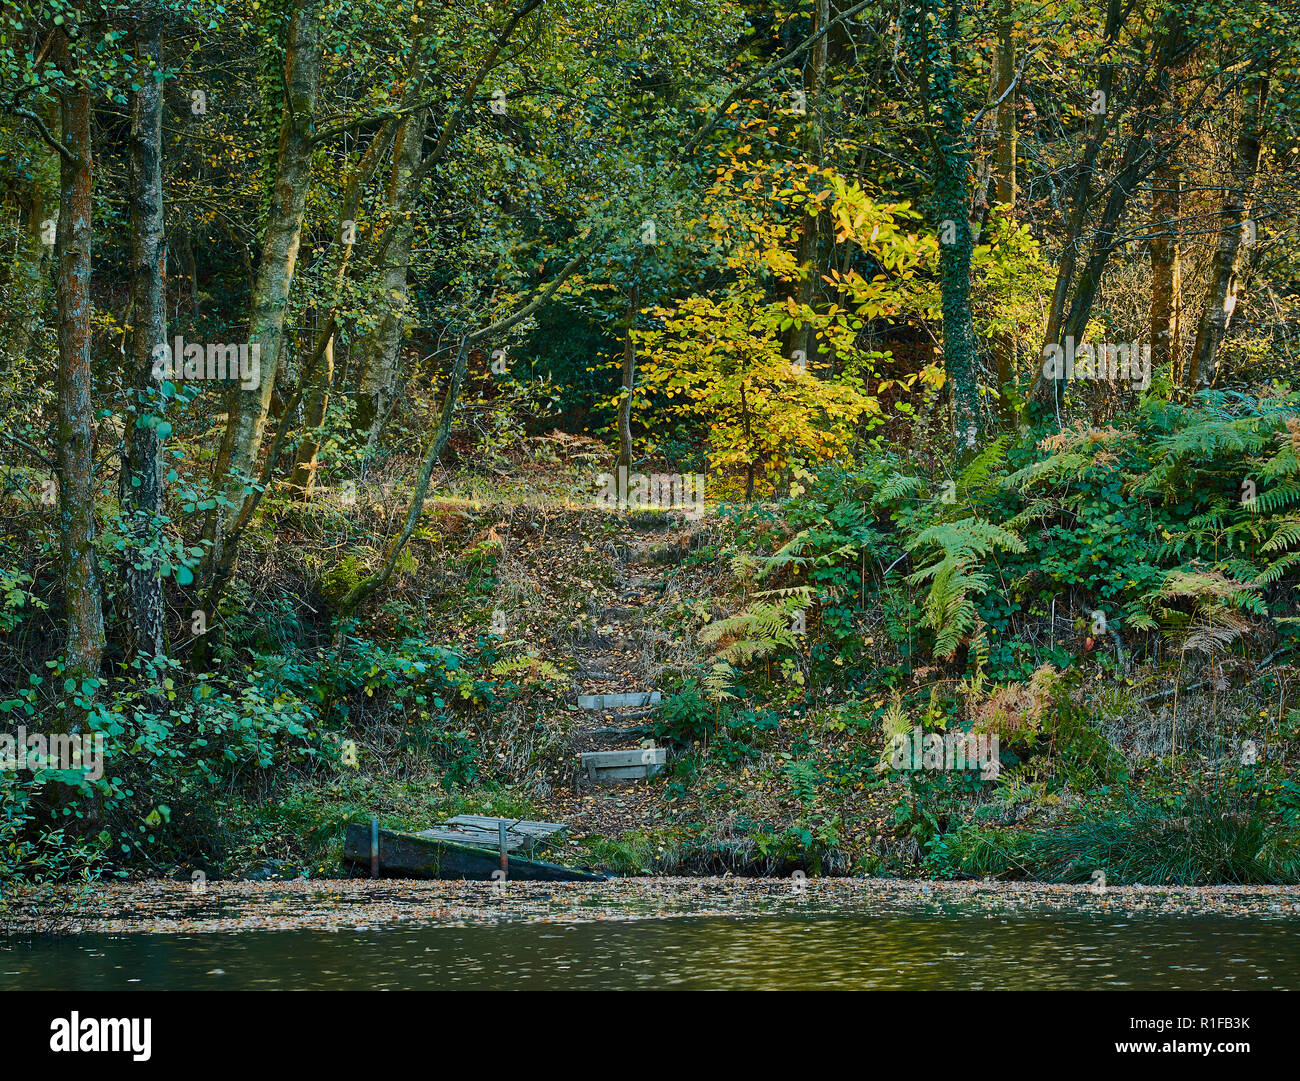 Un autunno scena di una foresta con piante e foglie che cambiano colore con gradini in legno che conduce a una banca di un lago Foto Stock